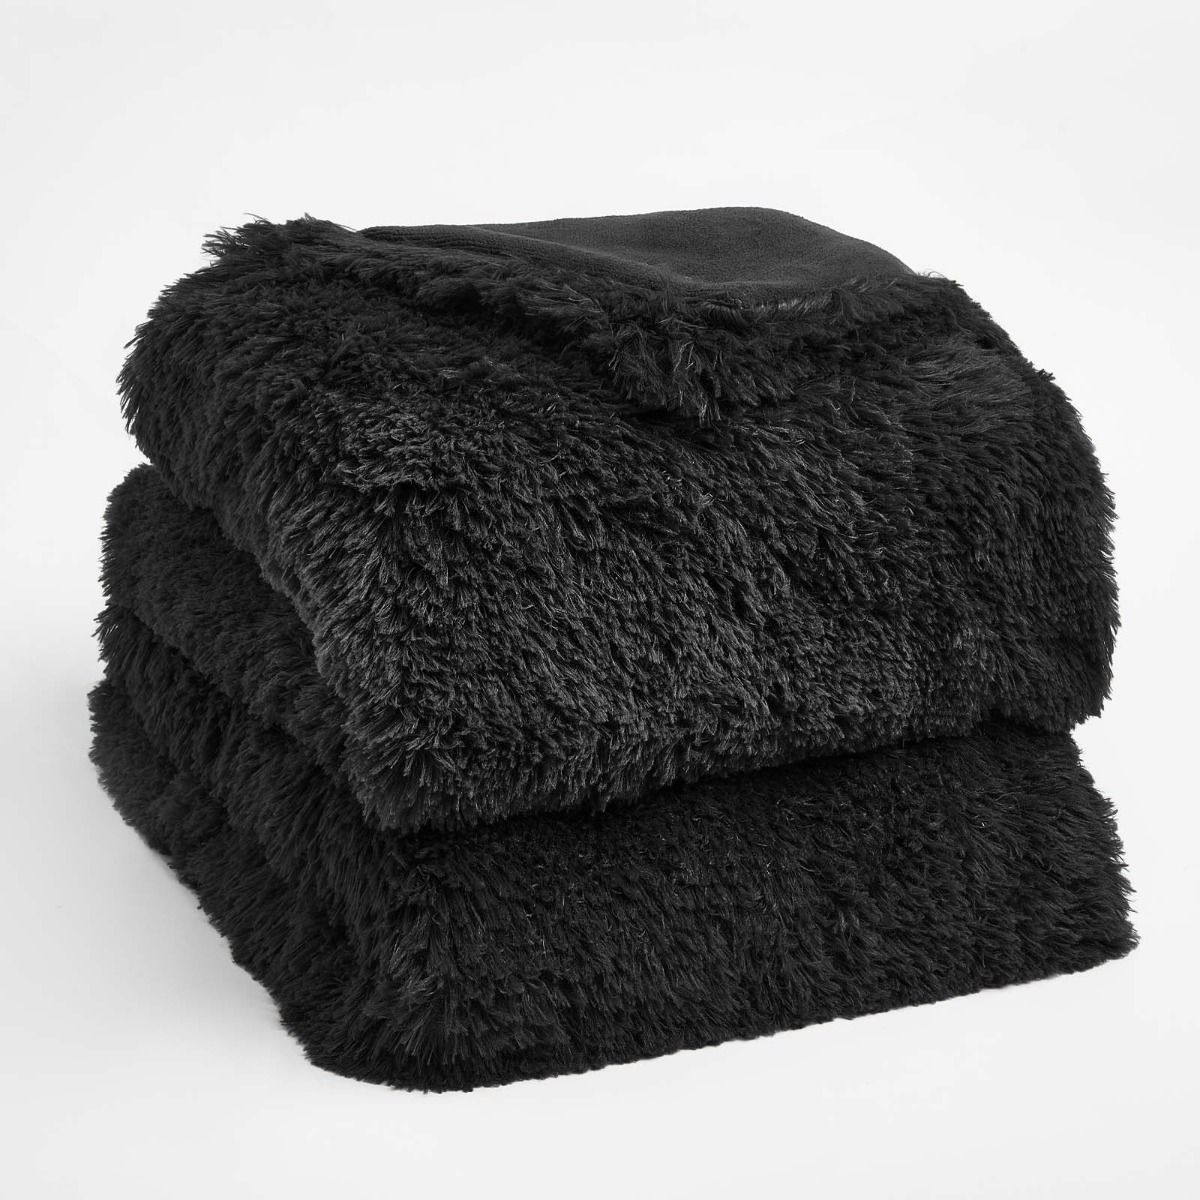 Sienna Fluffy Throw, Black - 150 x 200cm